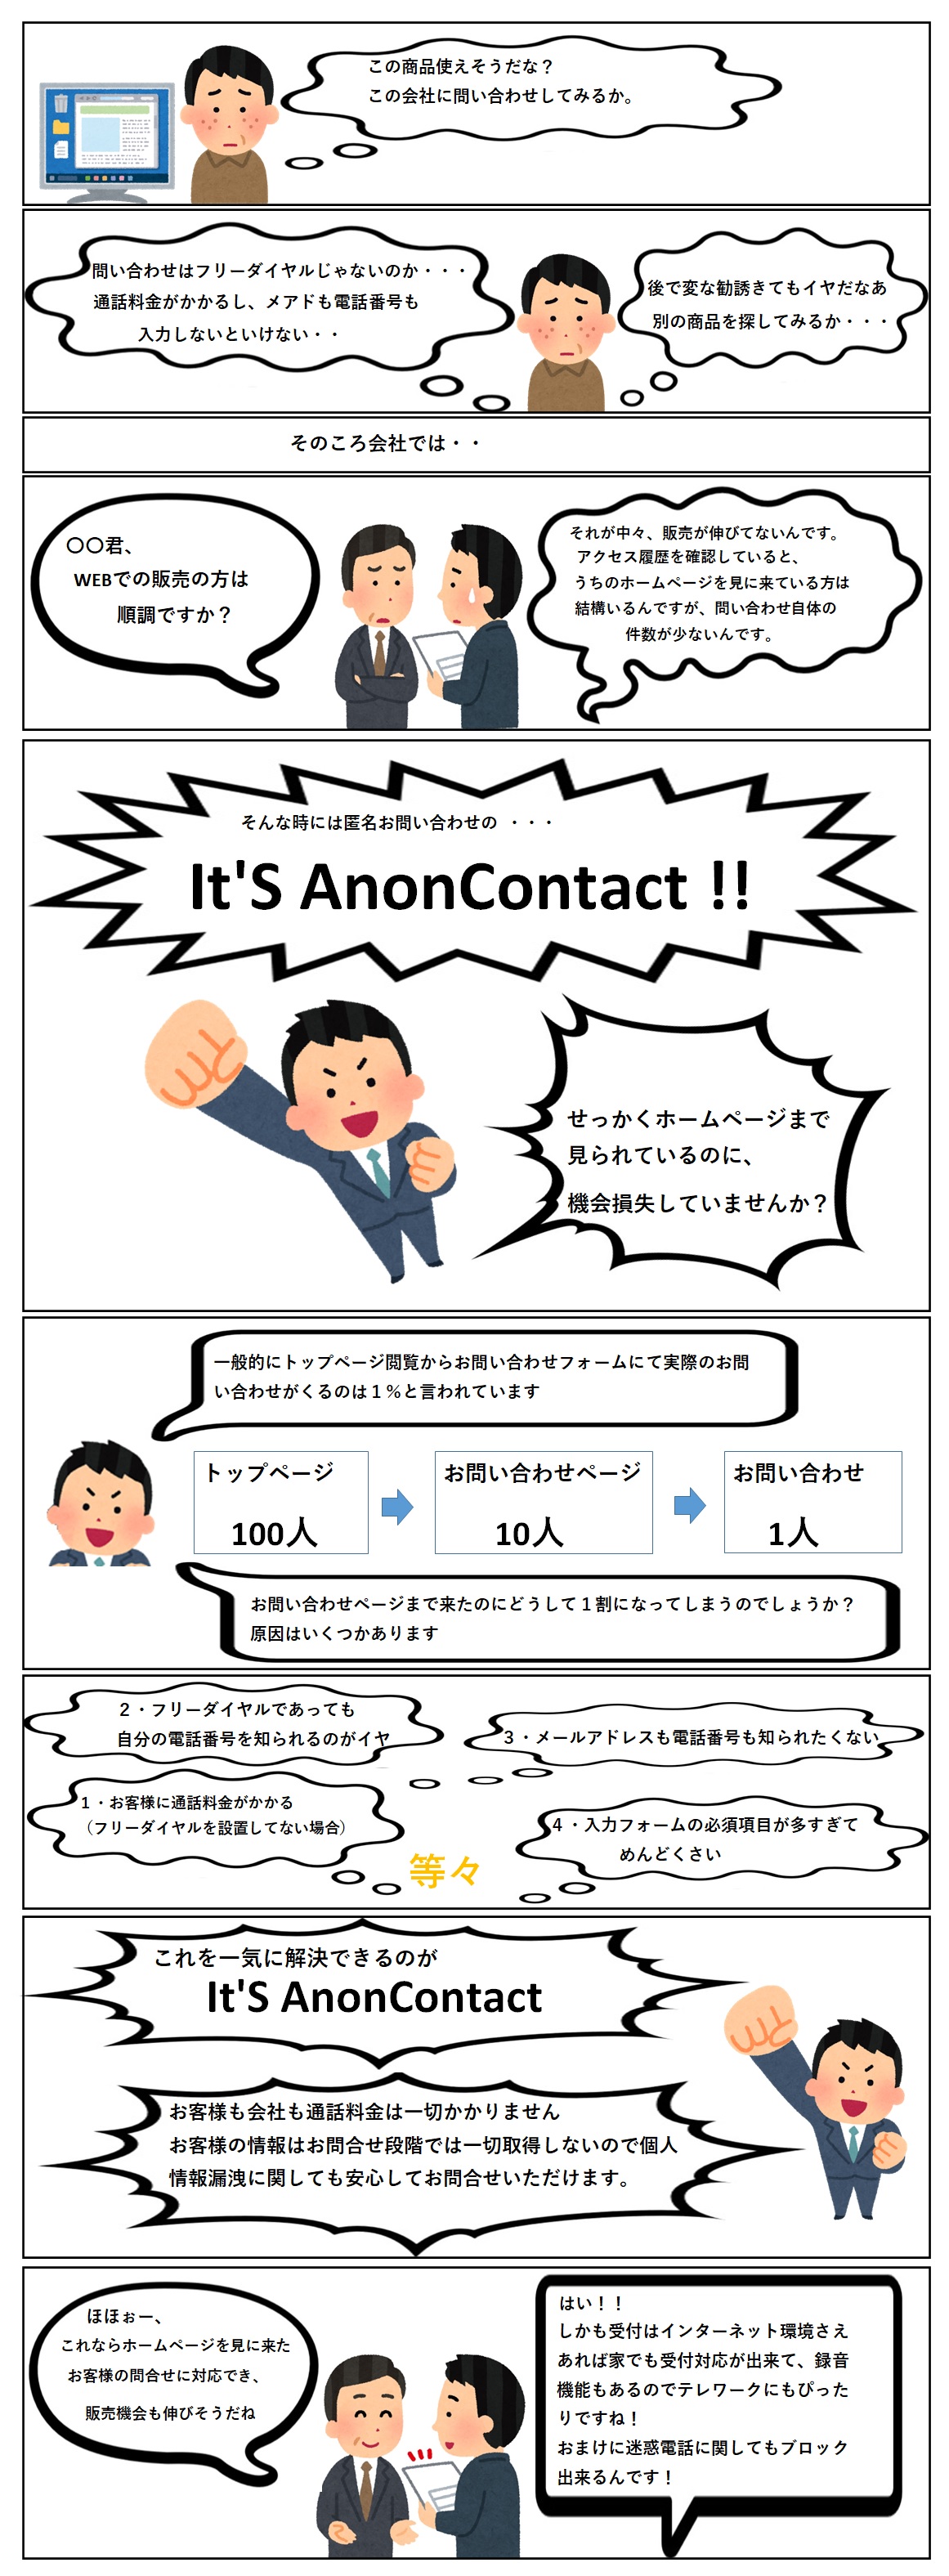 匿名お問い合わせシステム　It's AnonContact